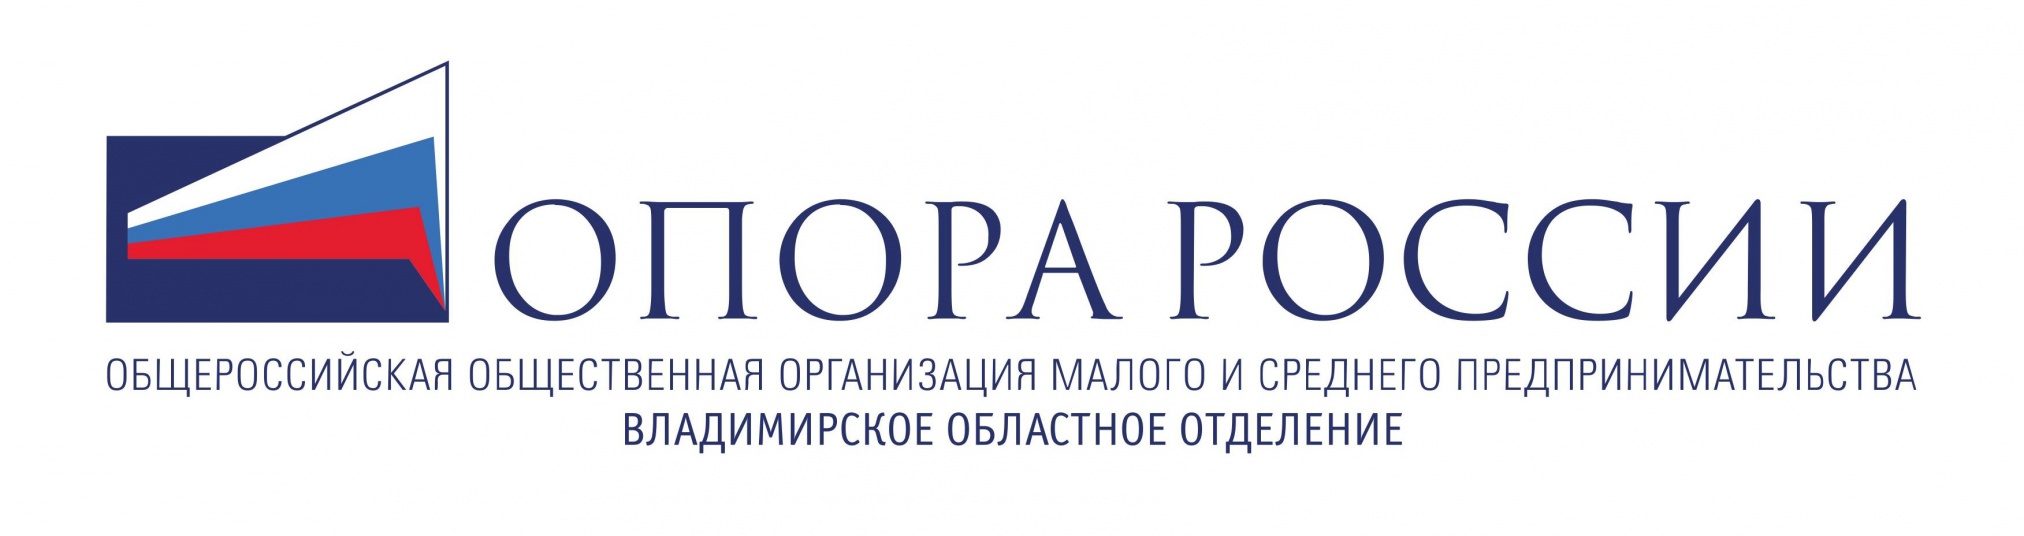 logo_Opora.jpg